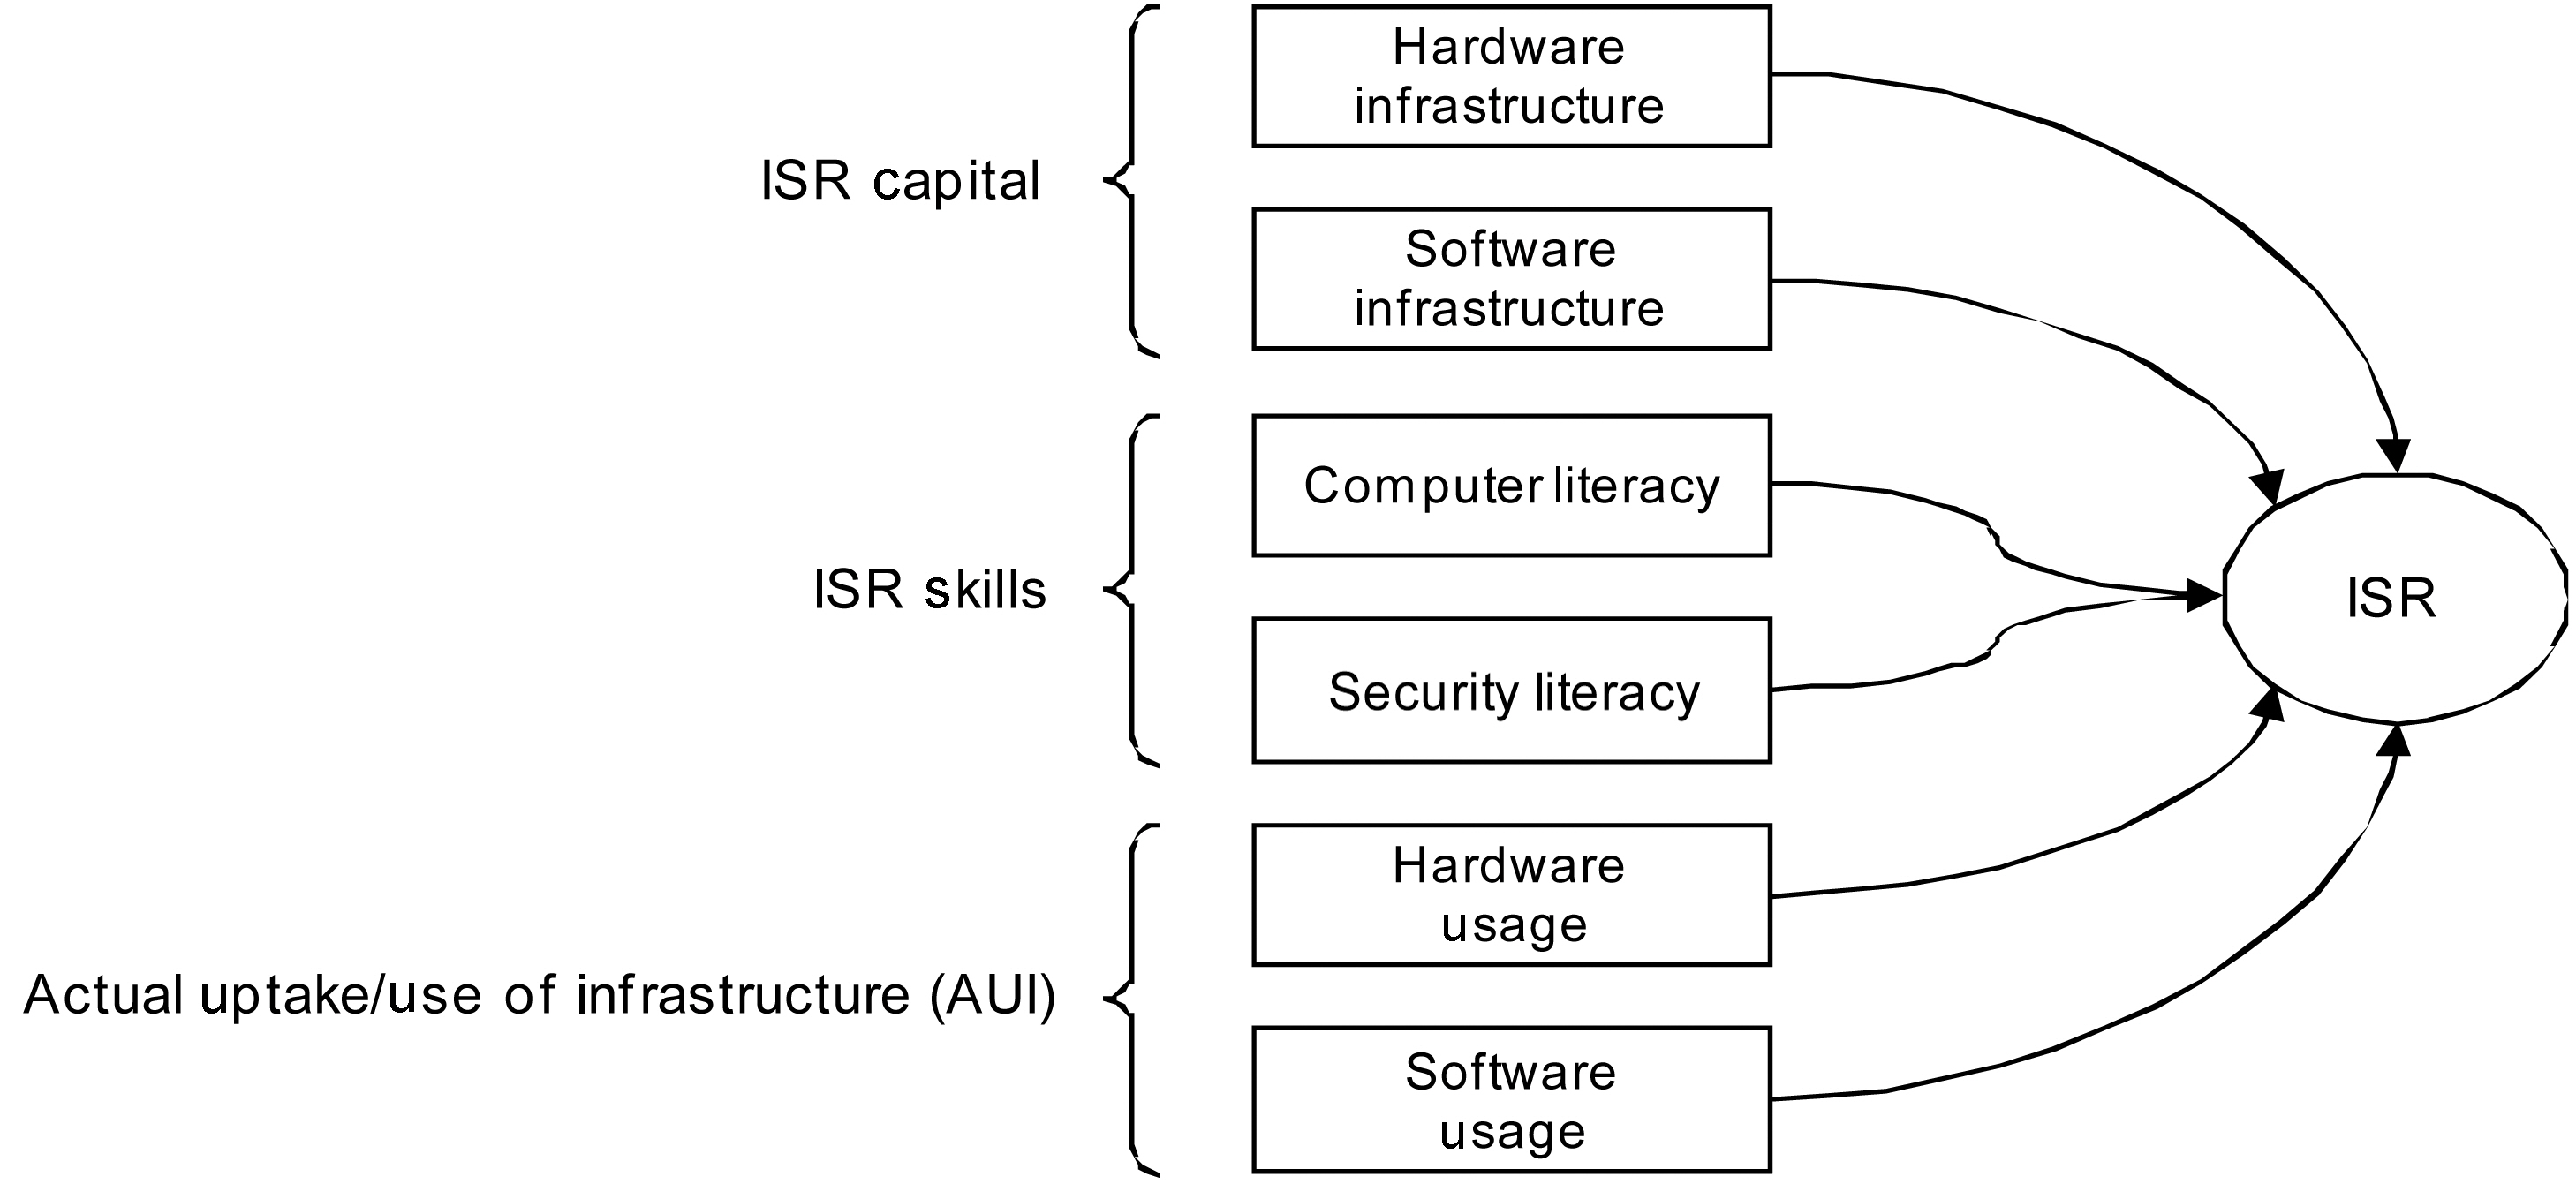 The assessment framework (ISR).